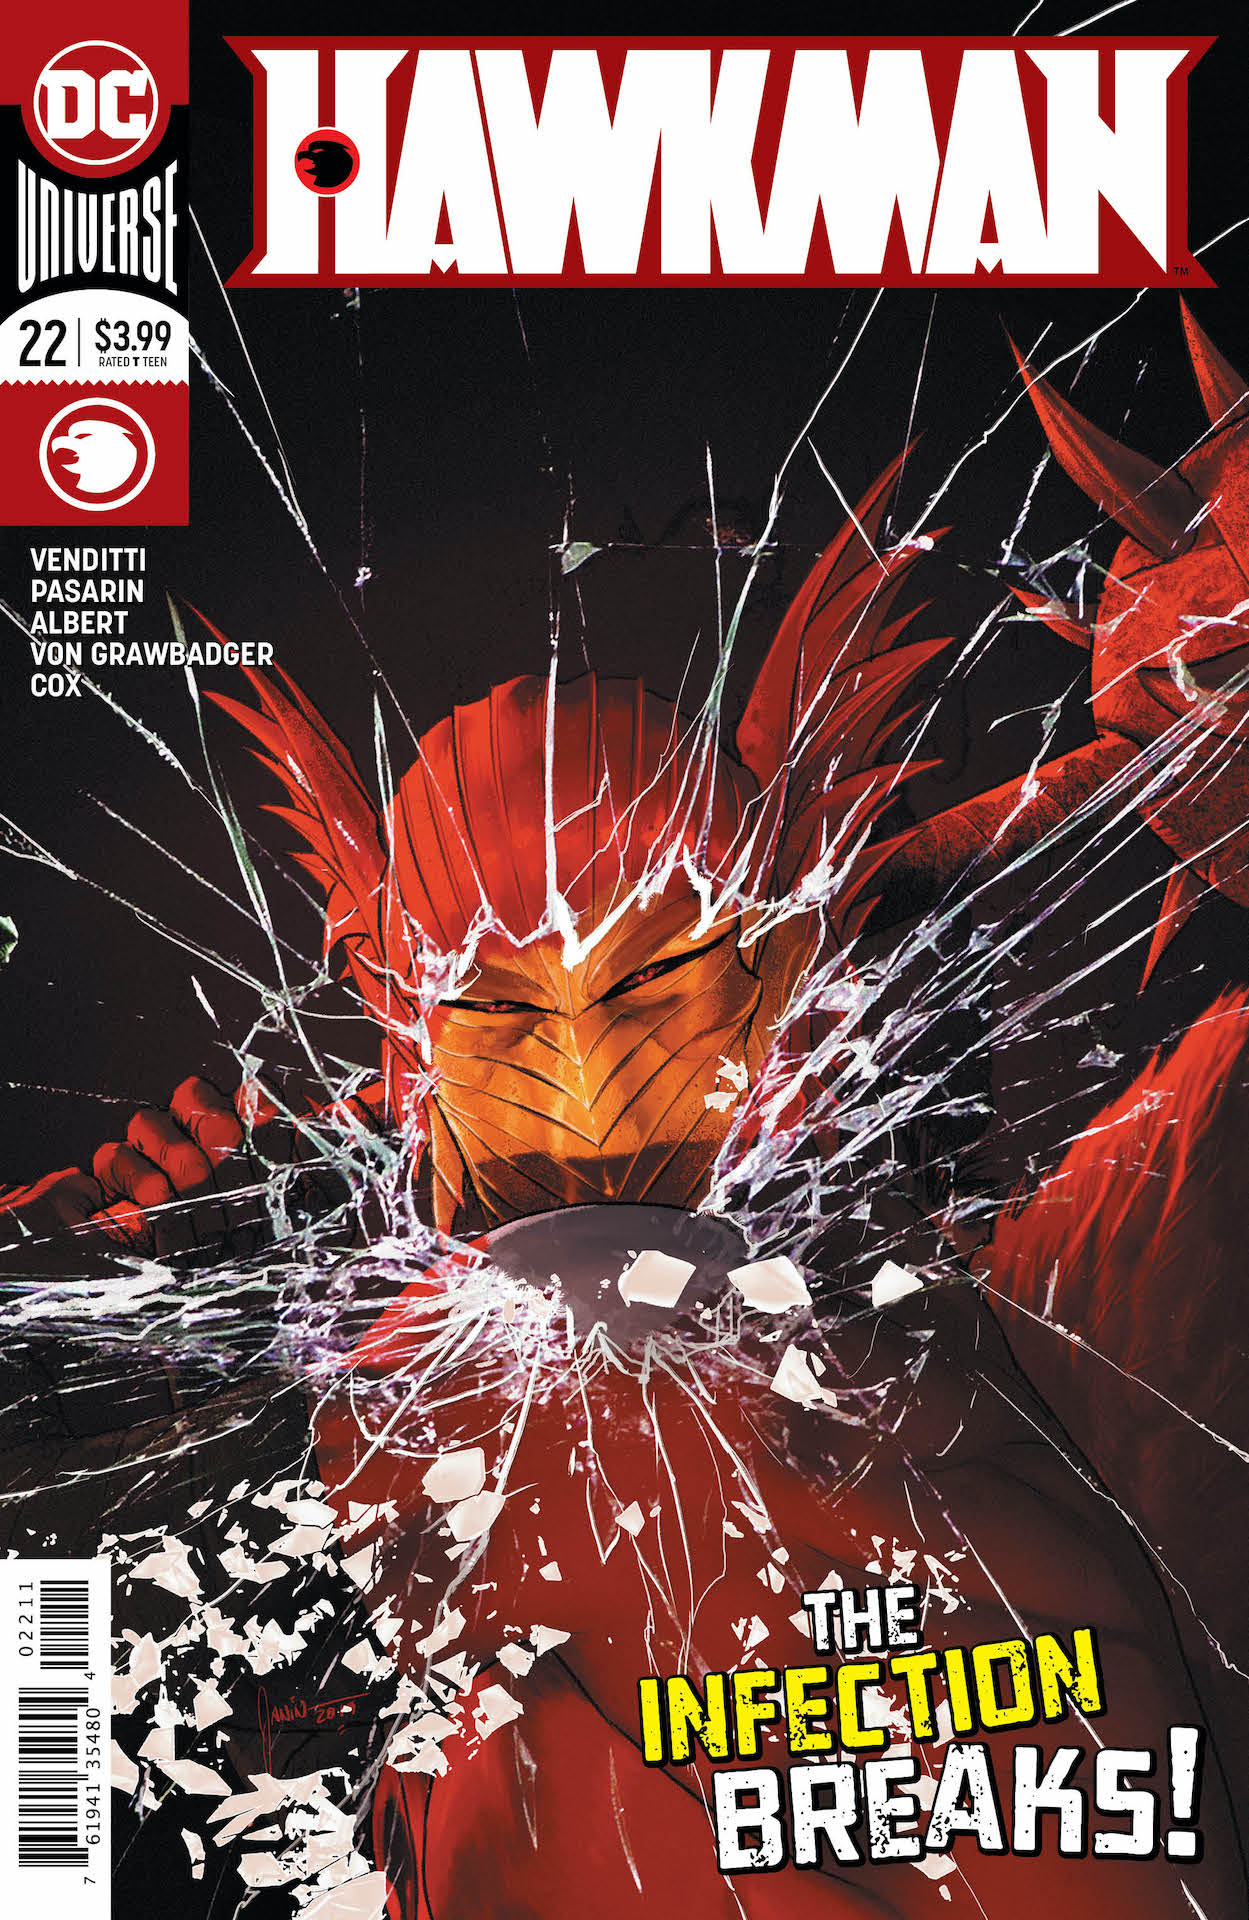 DC Preview: Hawkman #22